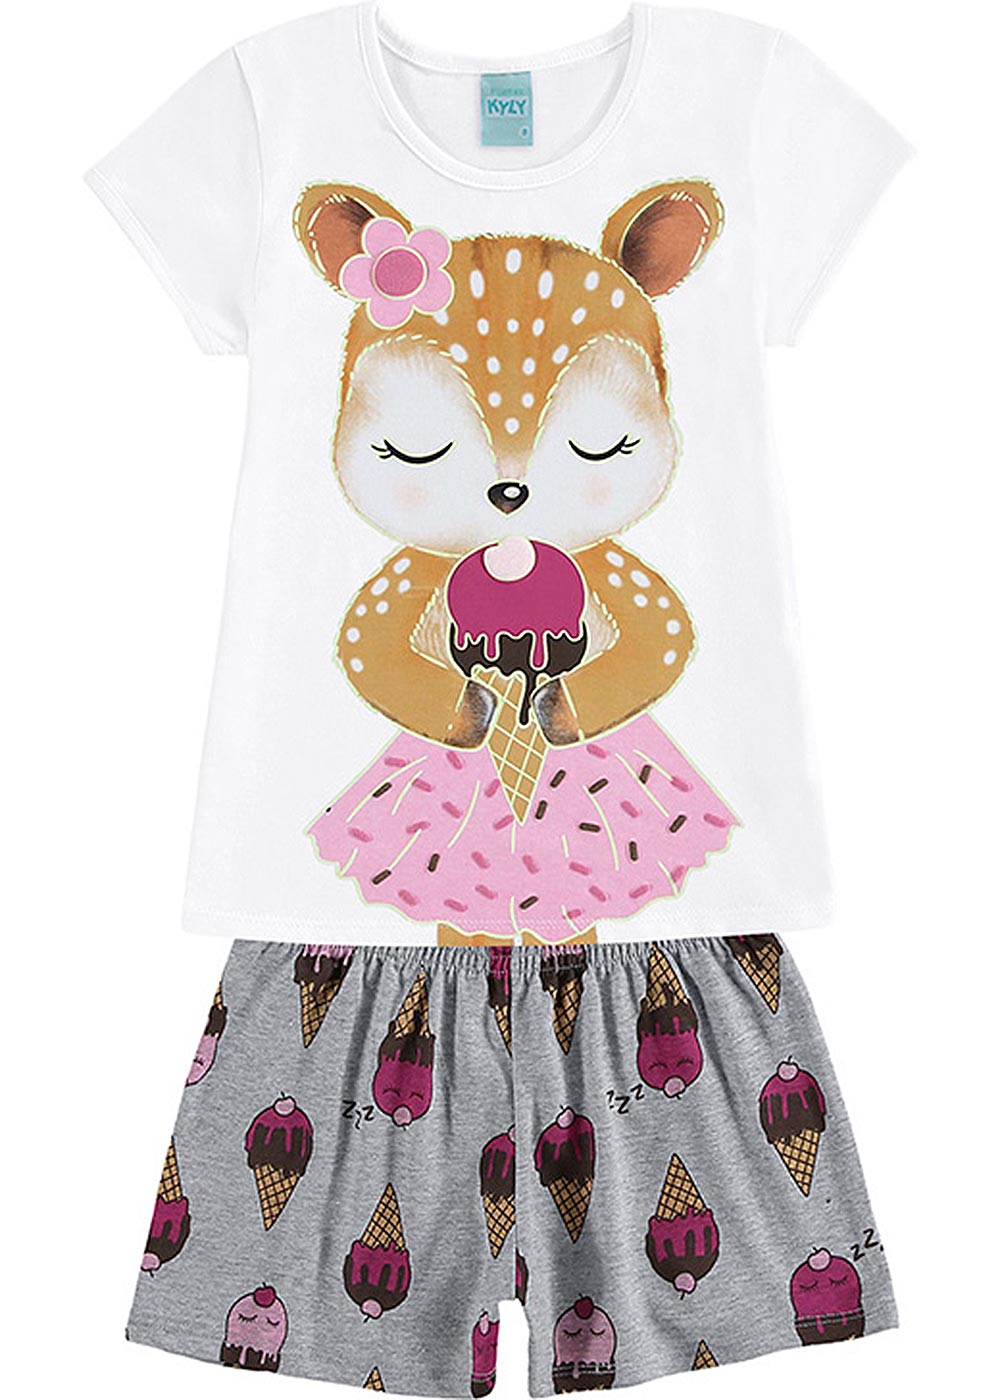 Pijama Infantil Feminino Verão Branco Ice Cream Dream Brilha no Escuro - Kyly